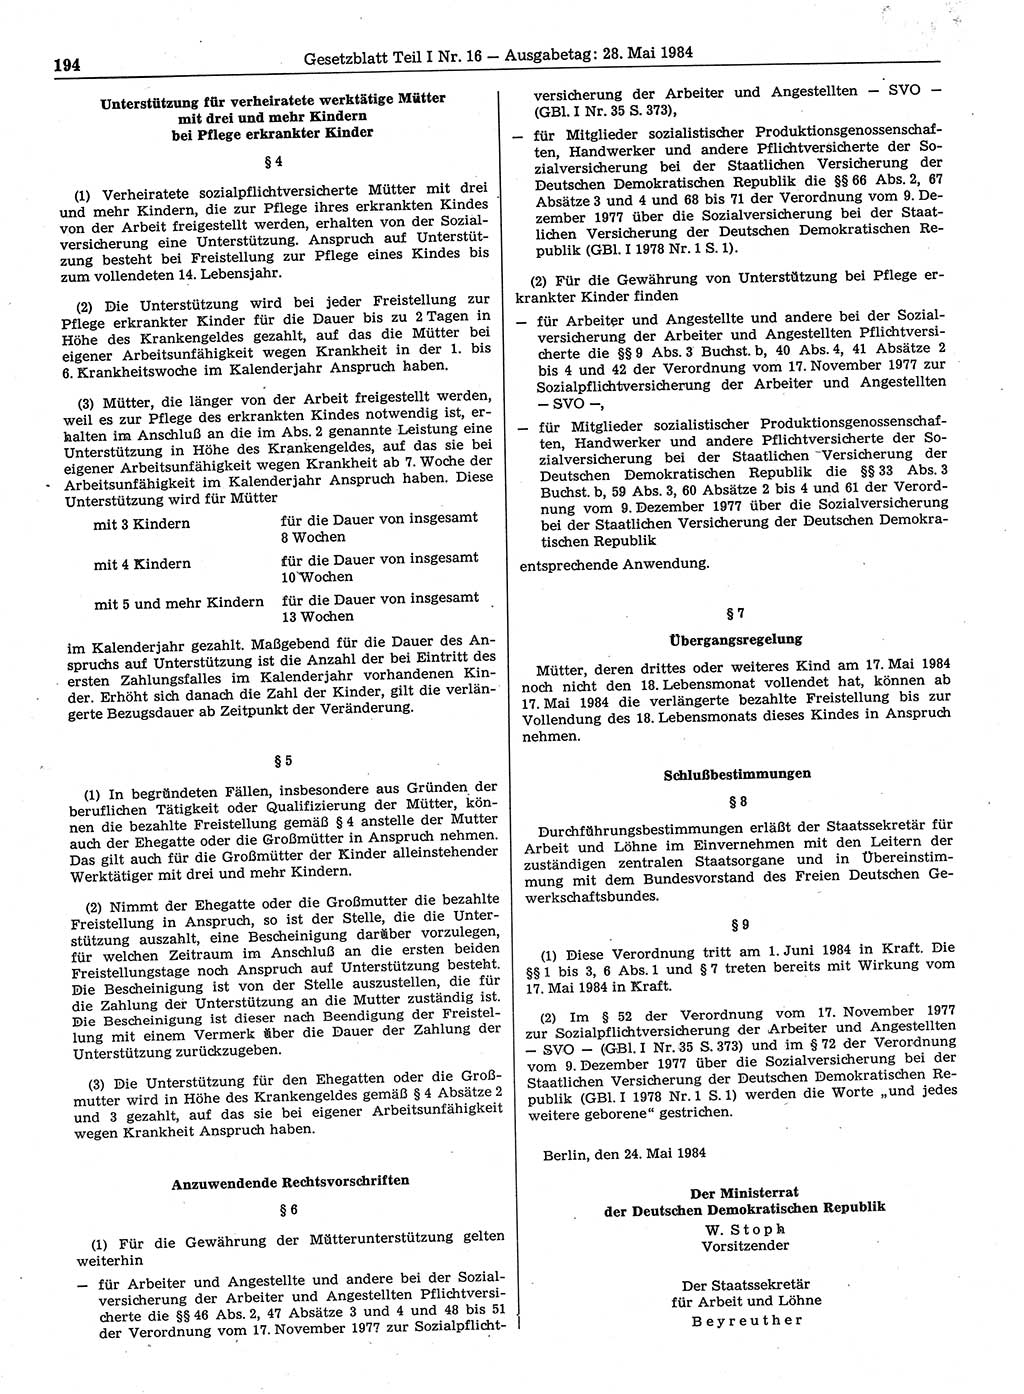 Gesetzblatt (GBl.) der Deutschen Demokratischen Republik (DDR) Teil Ⅰ 1984, Seite 194 (GBl. DDR Ⅰ 1984, S. 194)